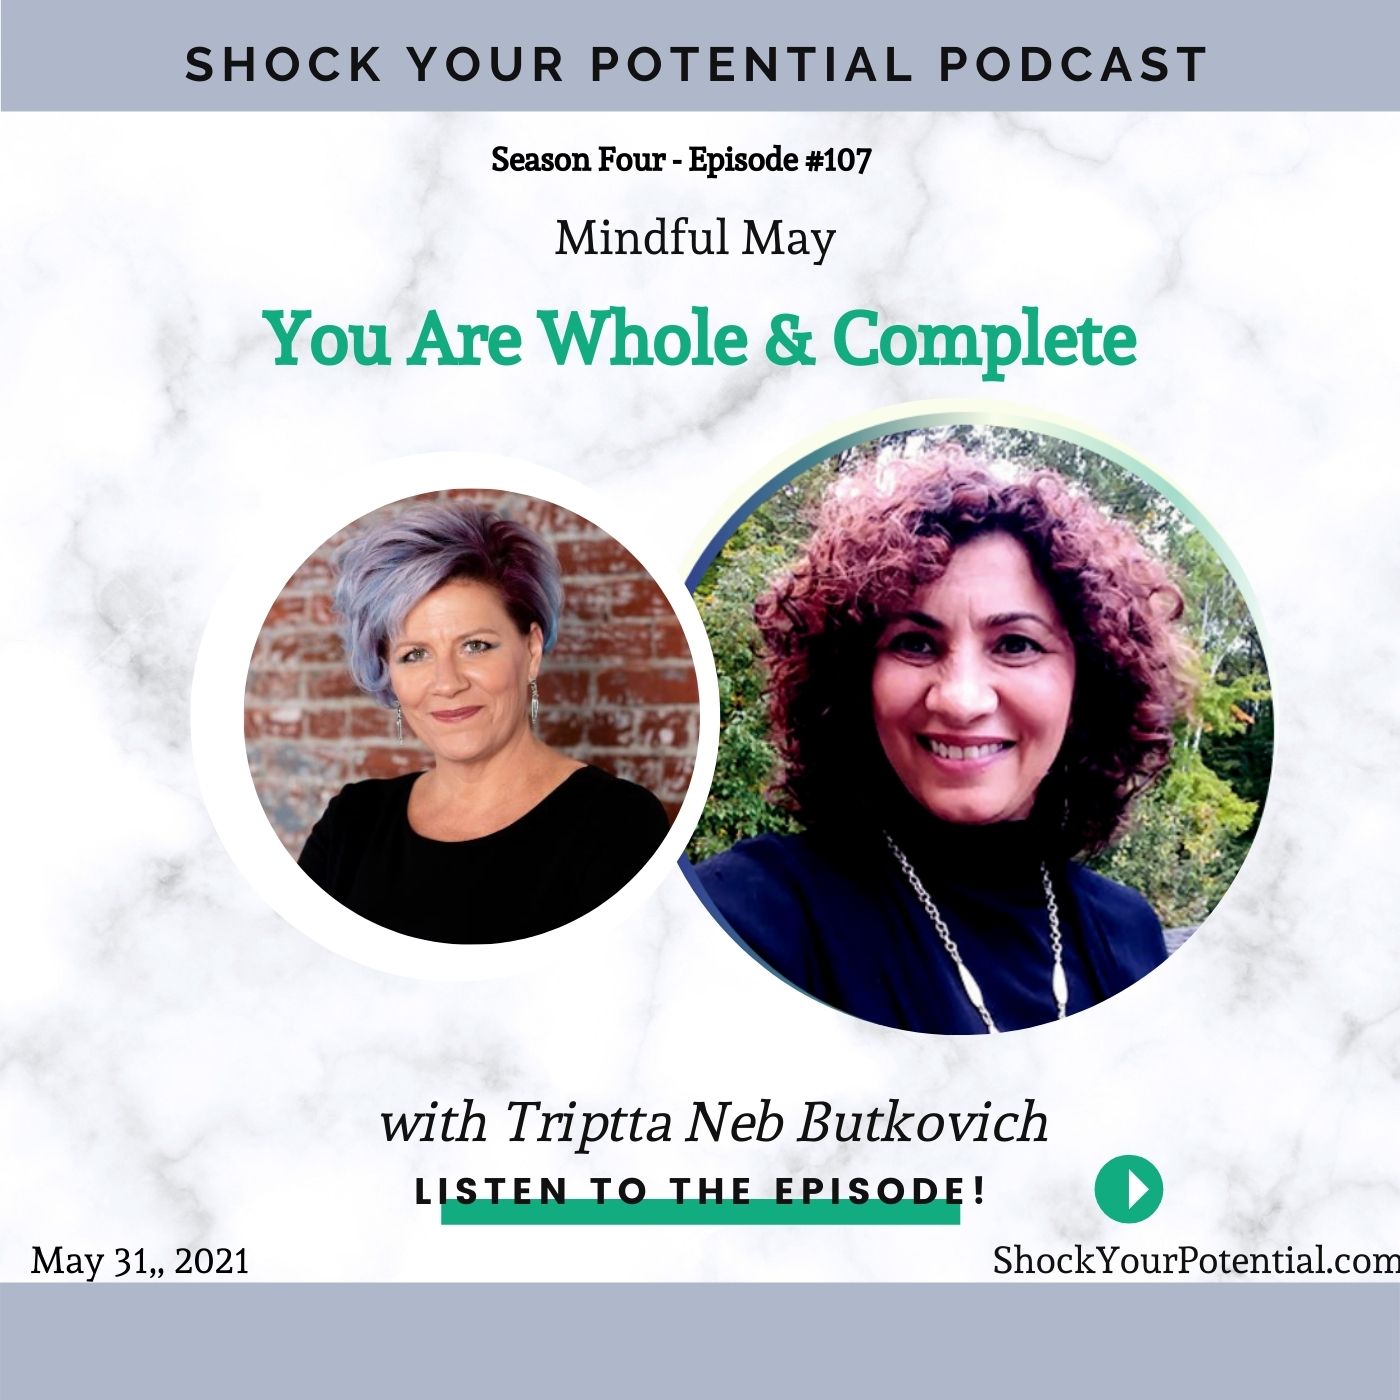 You Are Whole & Complete – Triptta Neb Butkovich